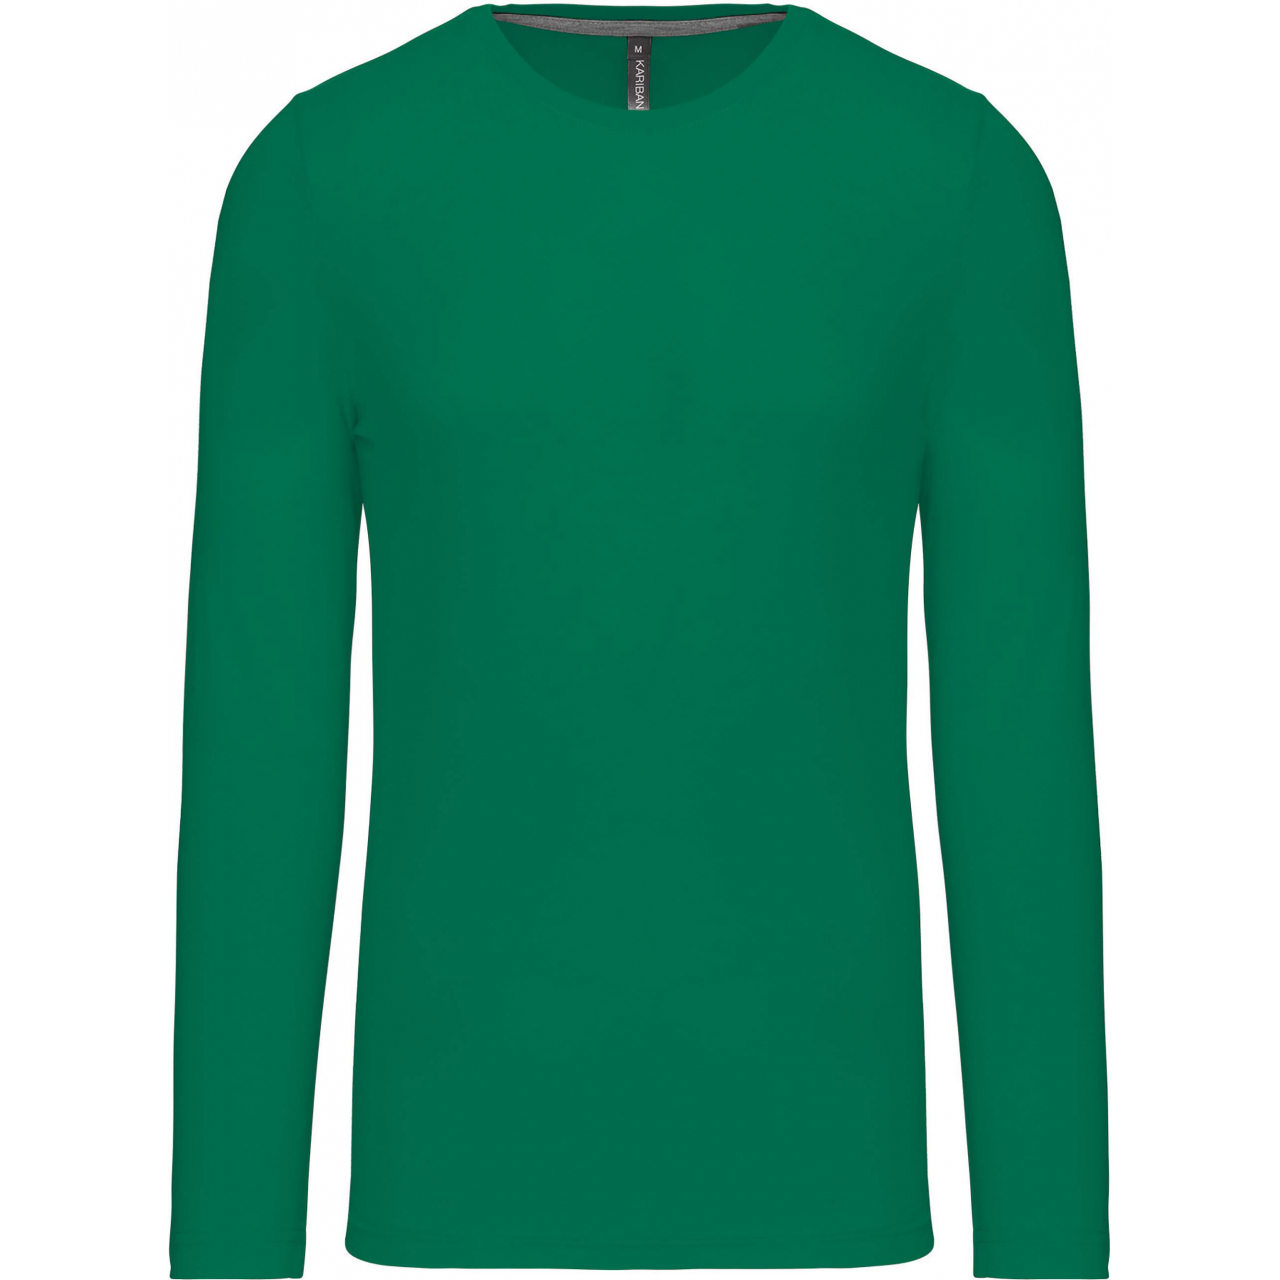 Pánské tričko Kariban dlouhý rukáv - zelené, XL